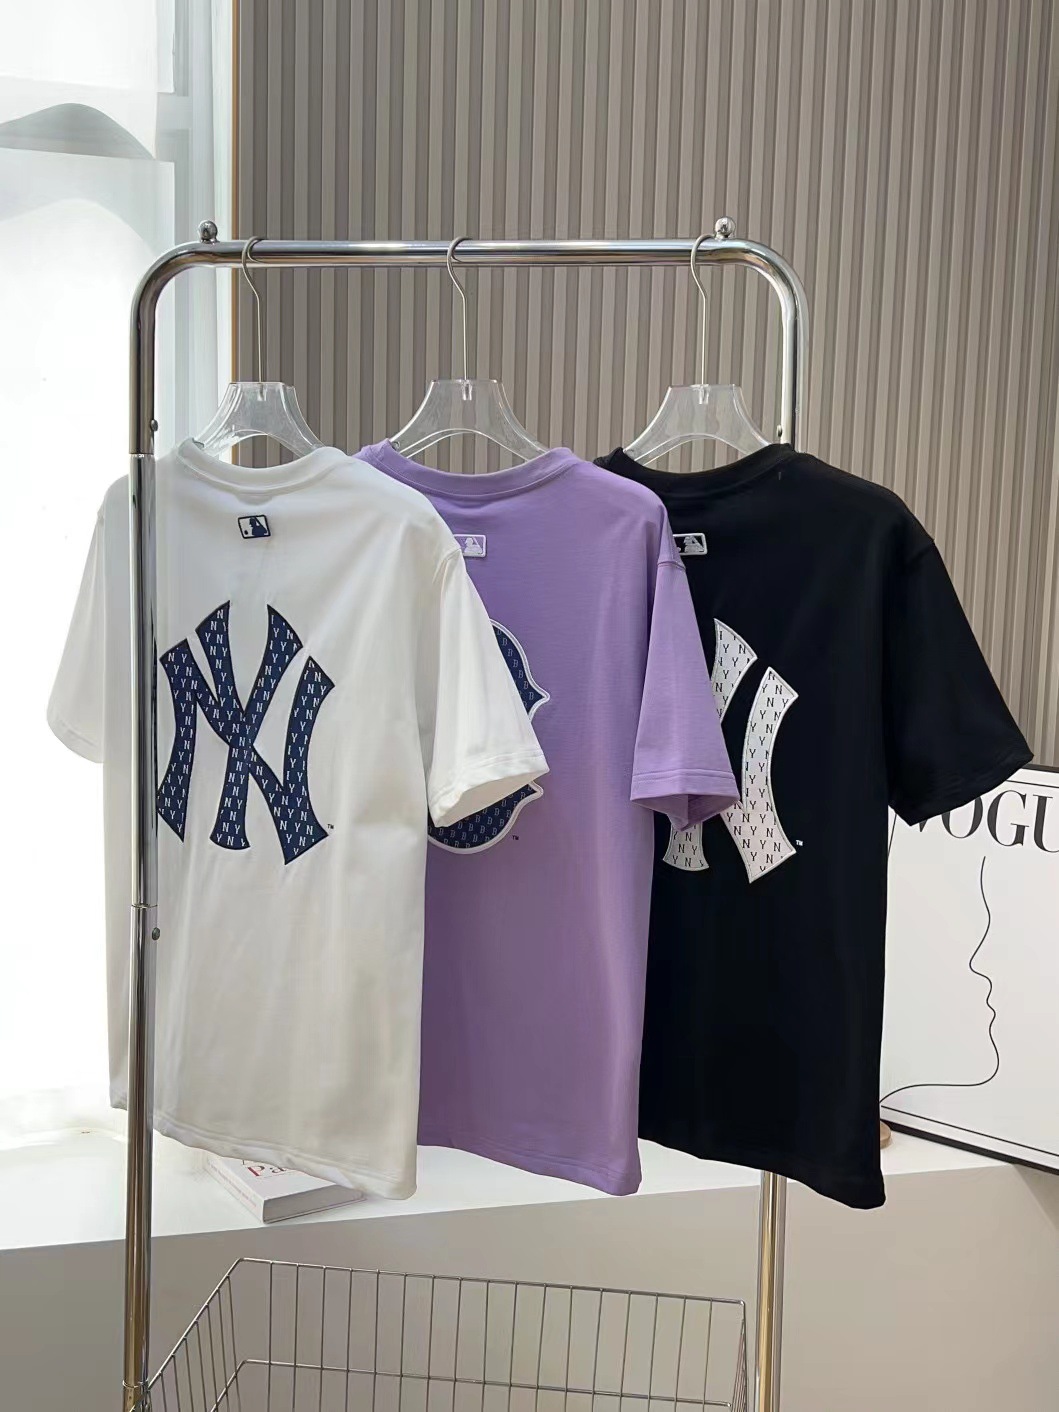 Korea MLB Classic Logo T Mens Fashion Tops  Sets Tshirts  Polo Shirts  on Carousell